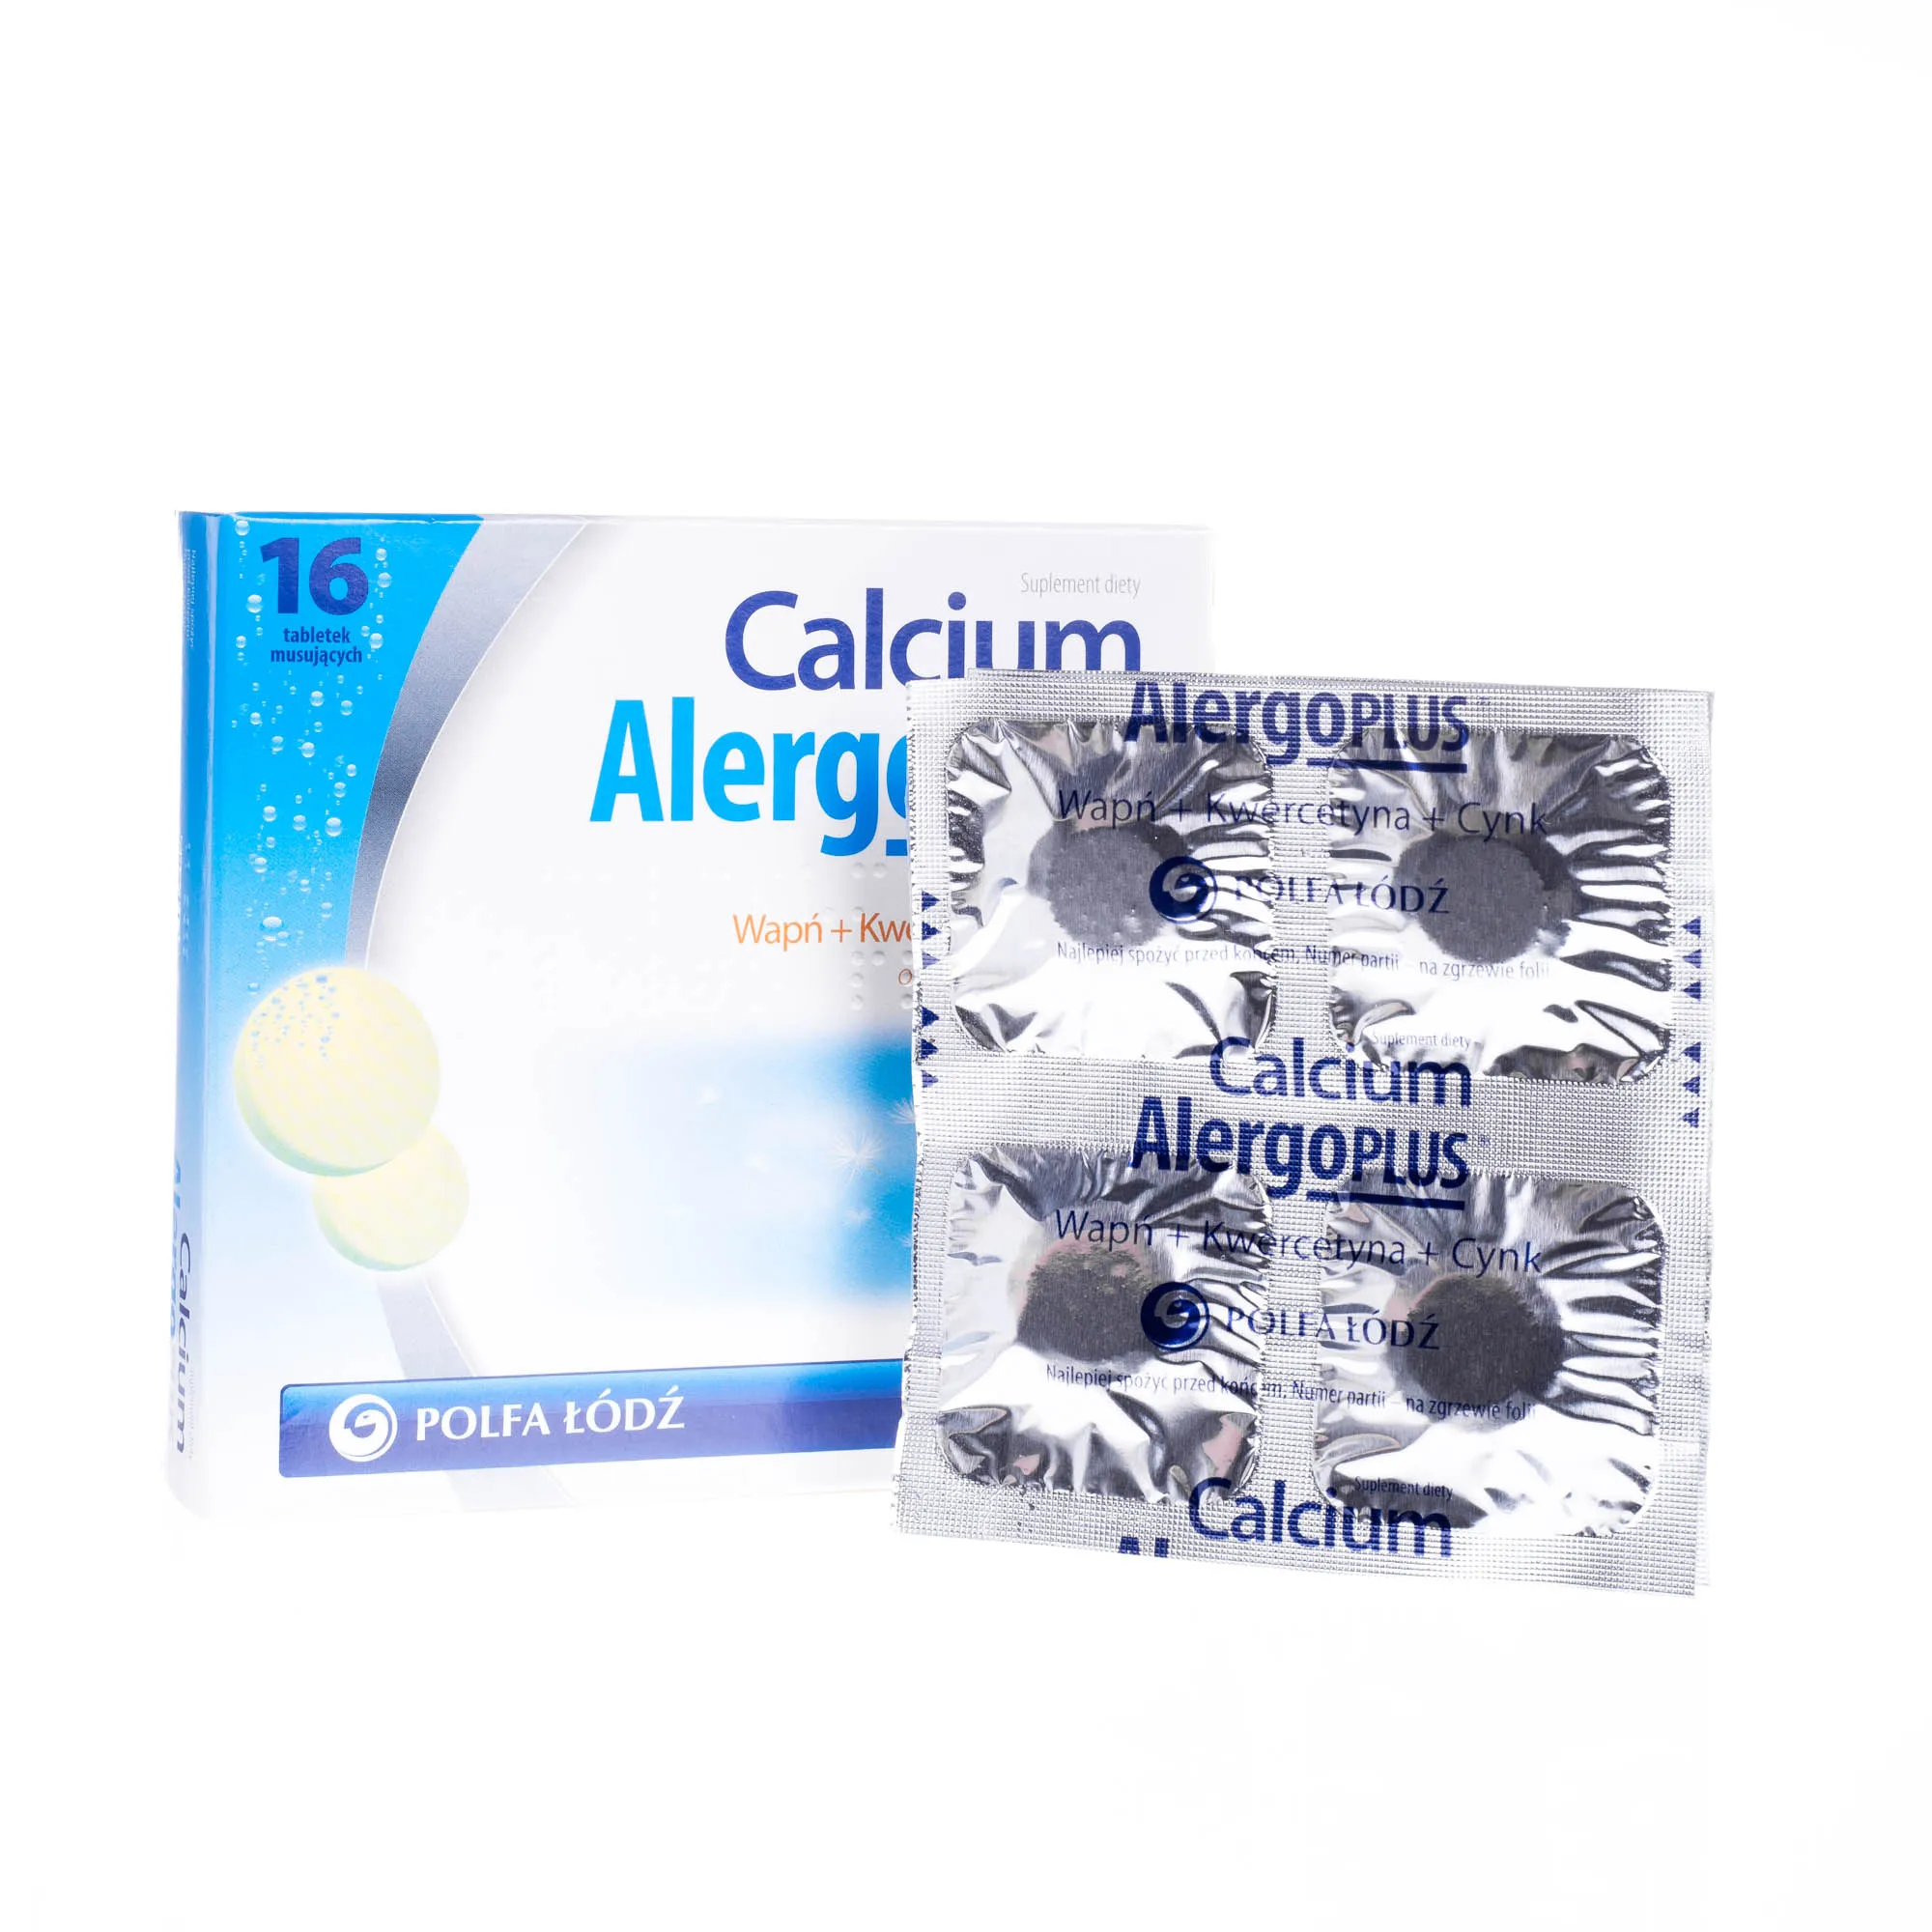 Calcium Alergo Plus - suplement diety, 16 tabletek musujących